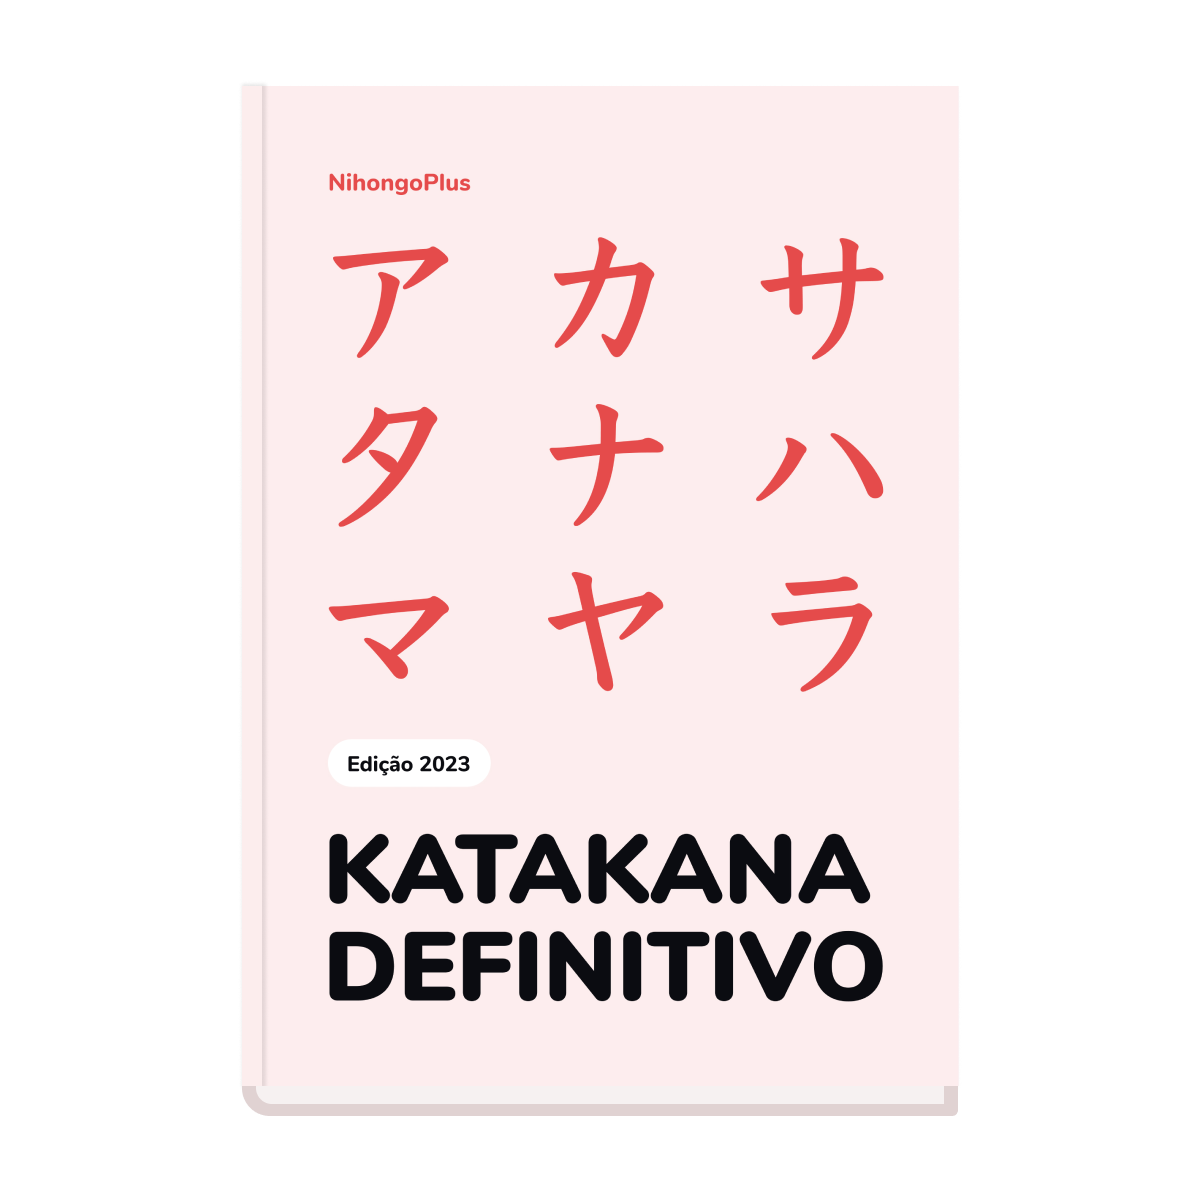 ebook de katakana usado para aula de japonês